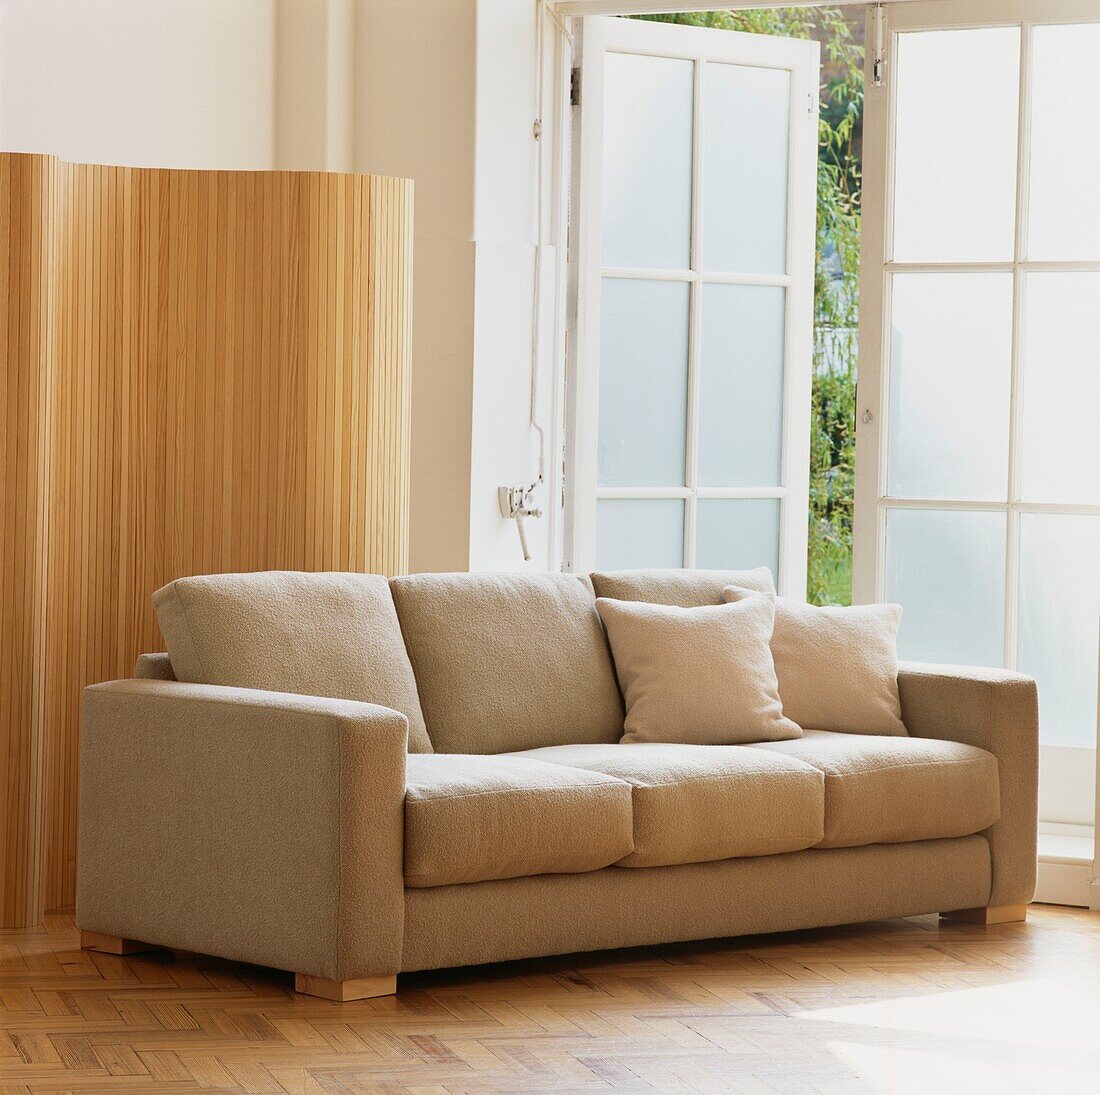 Beigefarbenes gepolstertes Sofa im Wohnzimmer neben einer offenen Tür und einem Holzschirm